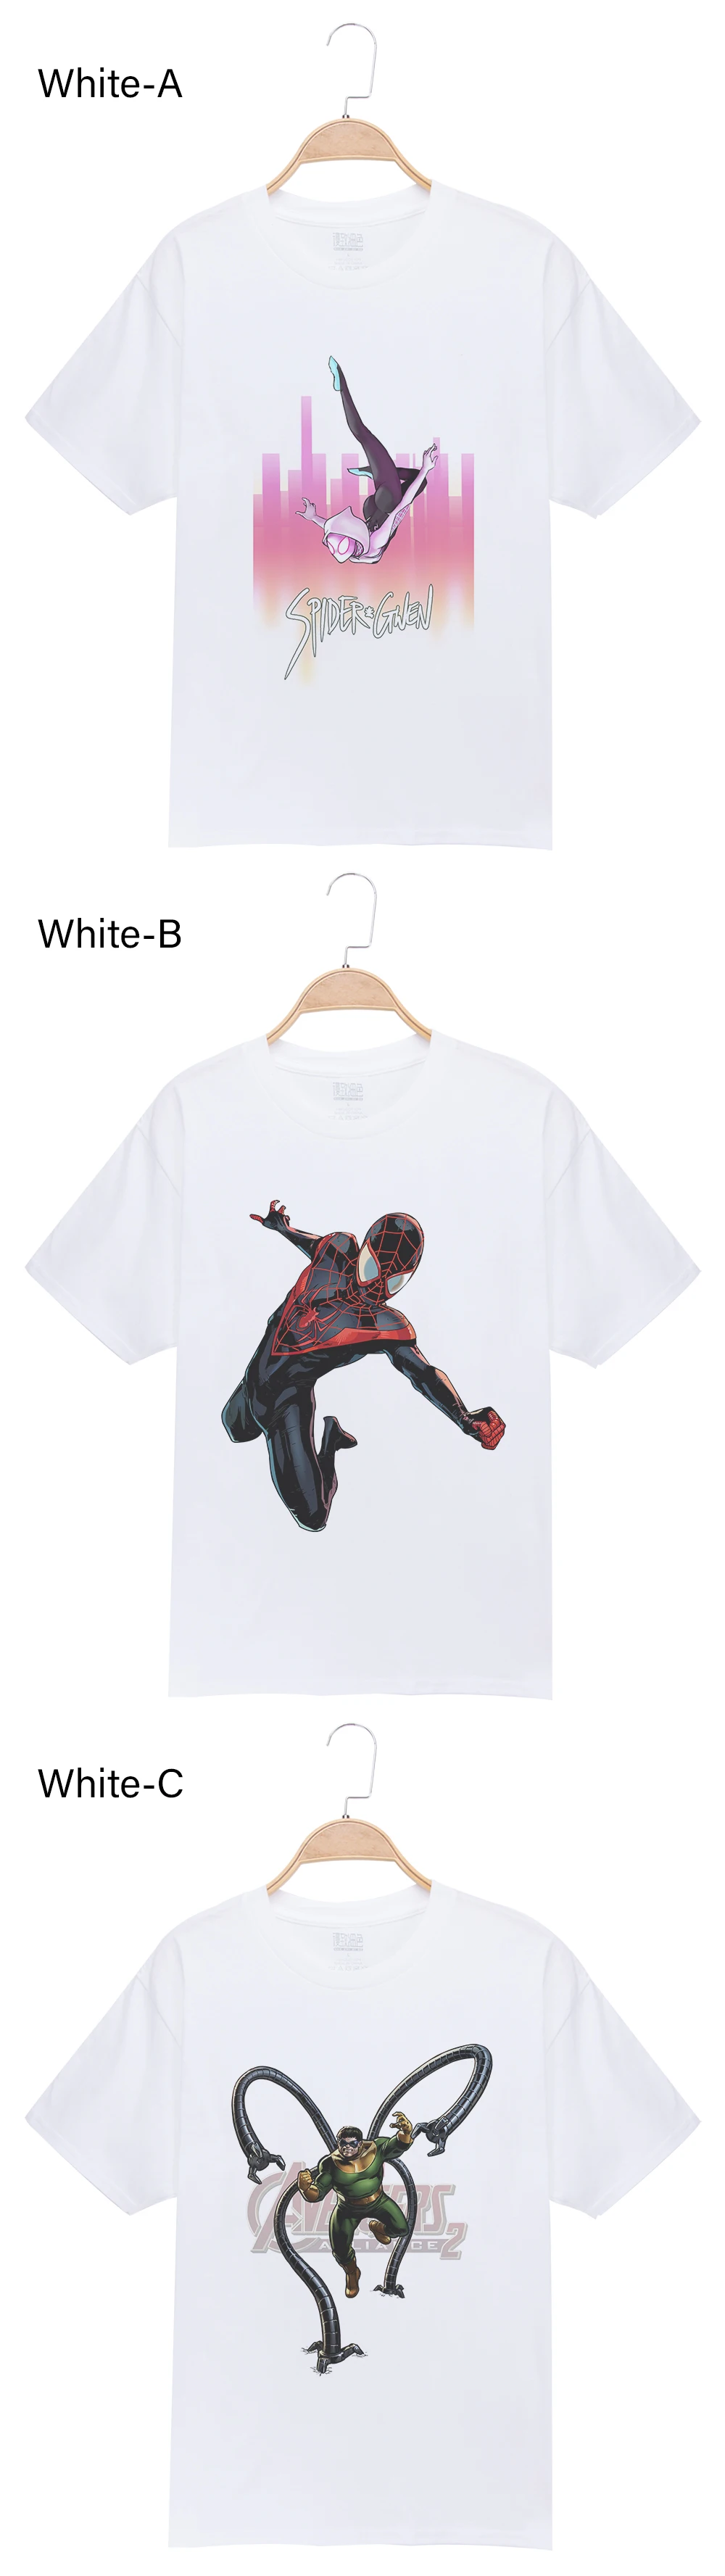 Мужская футболка, Забавный Человек-паук, чтение, супергерой, 3D принт, Мужская футболка классная, топы, футболка, короткий рукав, базовые футболки, Camisetas XXXL